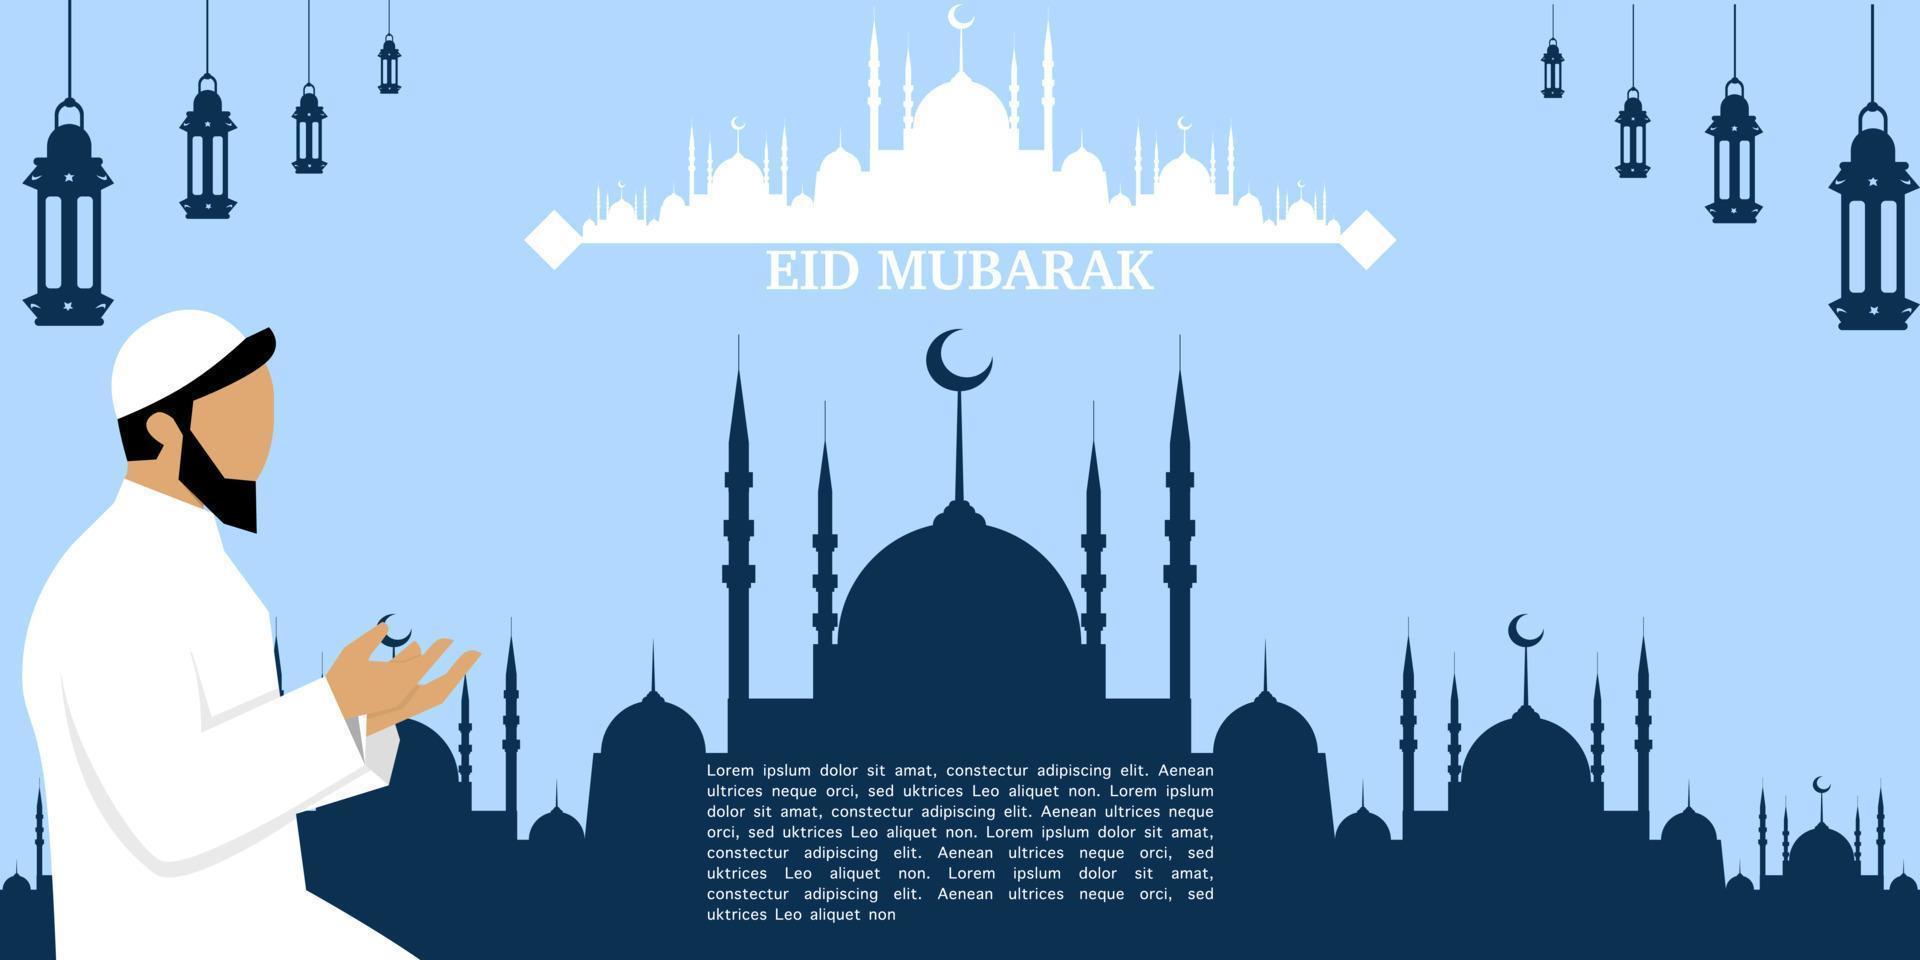 eid mubarak illustratie met moskee silhouet en een moslim karakter, eid mubarak groet poster, uitnodiging sjabloon, sociaal media, enz. eid mubarak vlak vector illustratie.